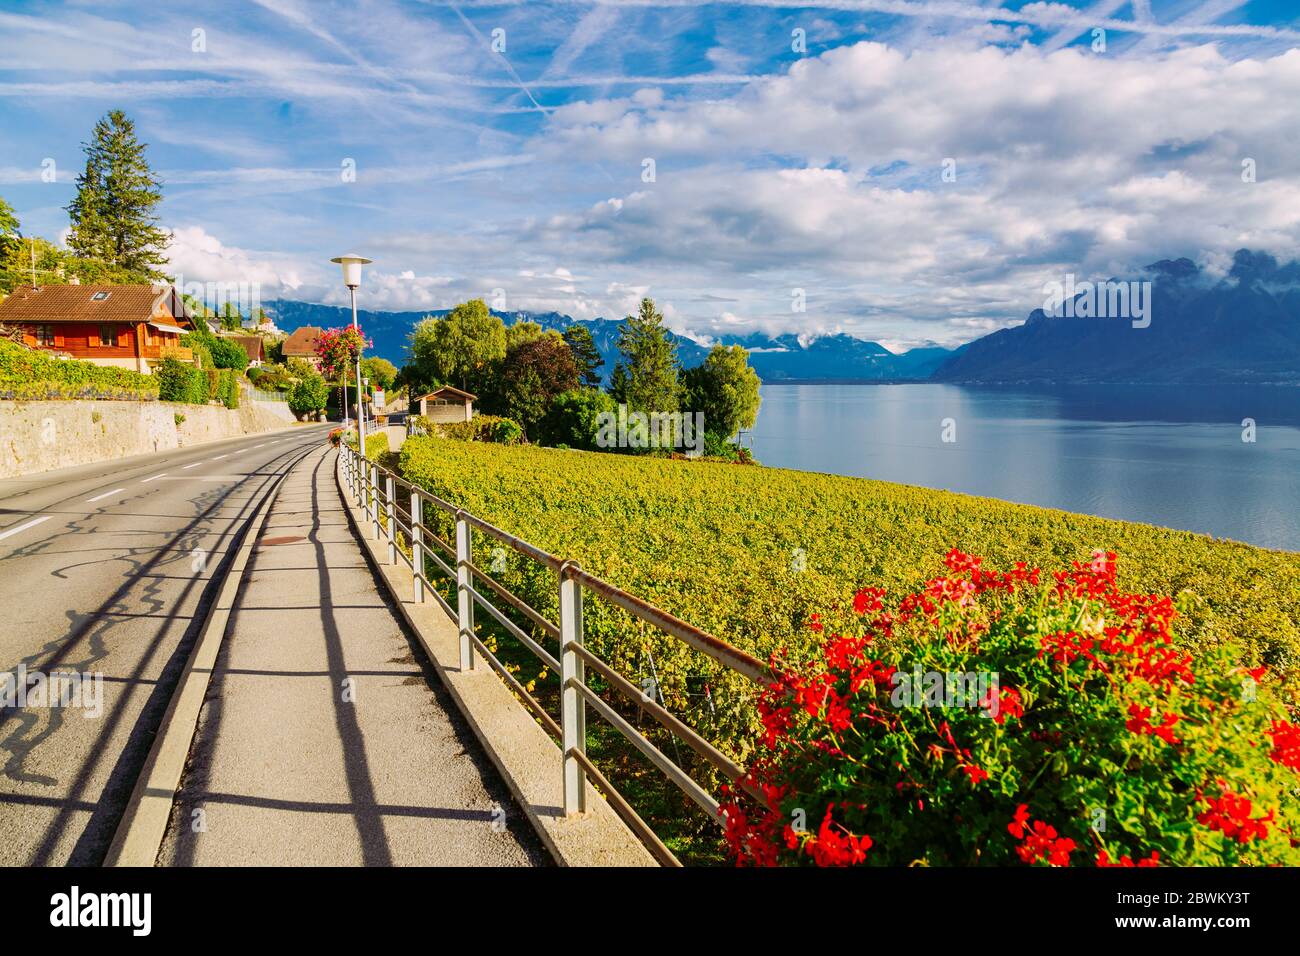 Lavaux, Suisse: Autoroute au-dessus du lac Léman parmi les vignobles de Lavaux dans le canton de Vaud Banque D'Images